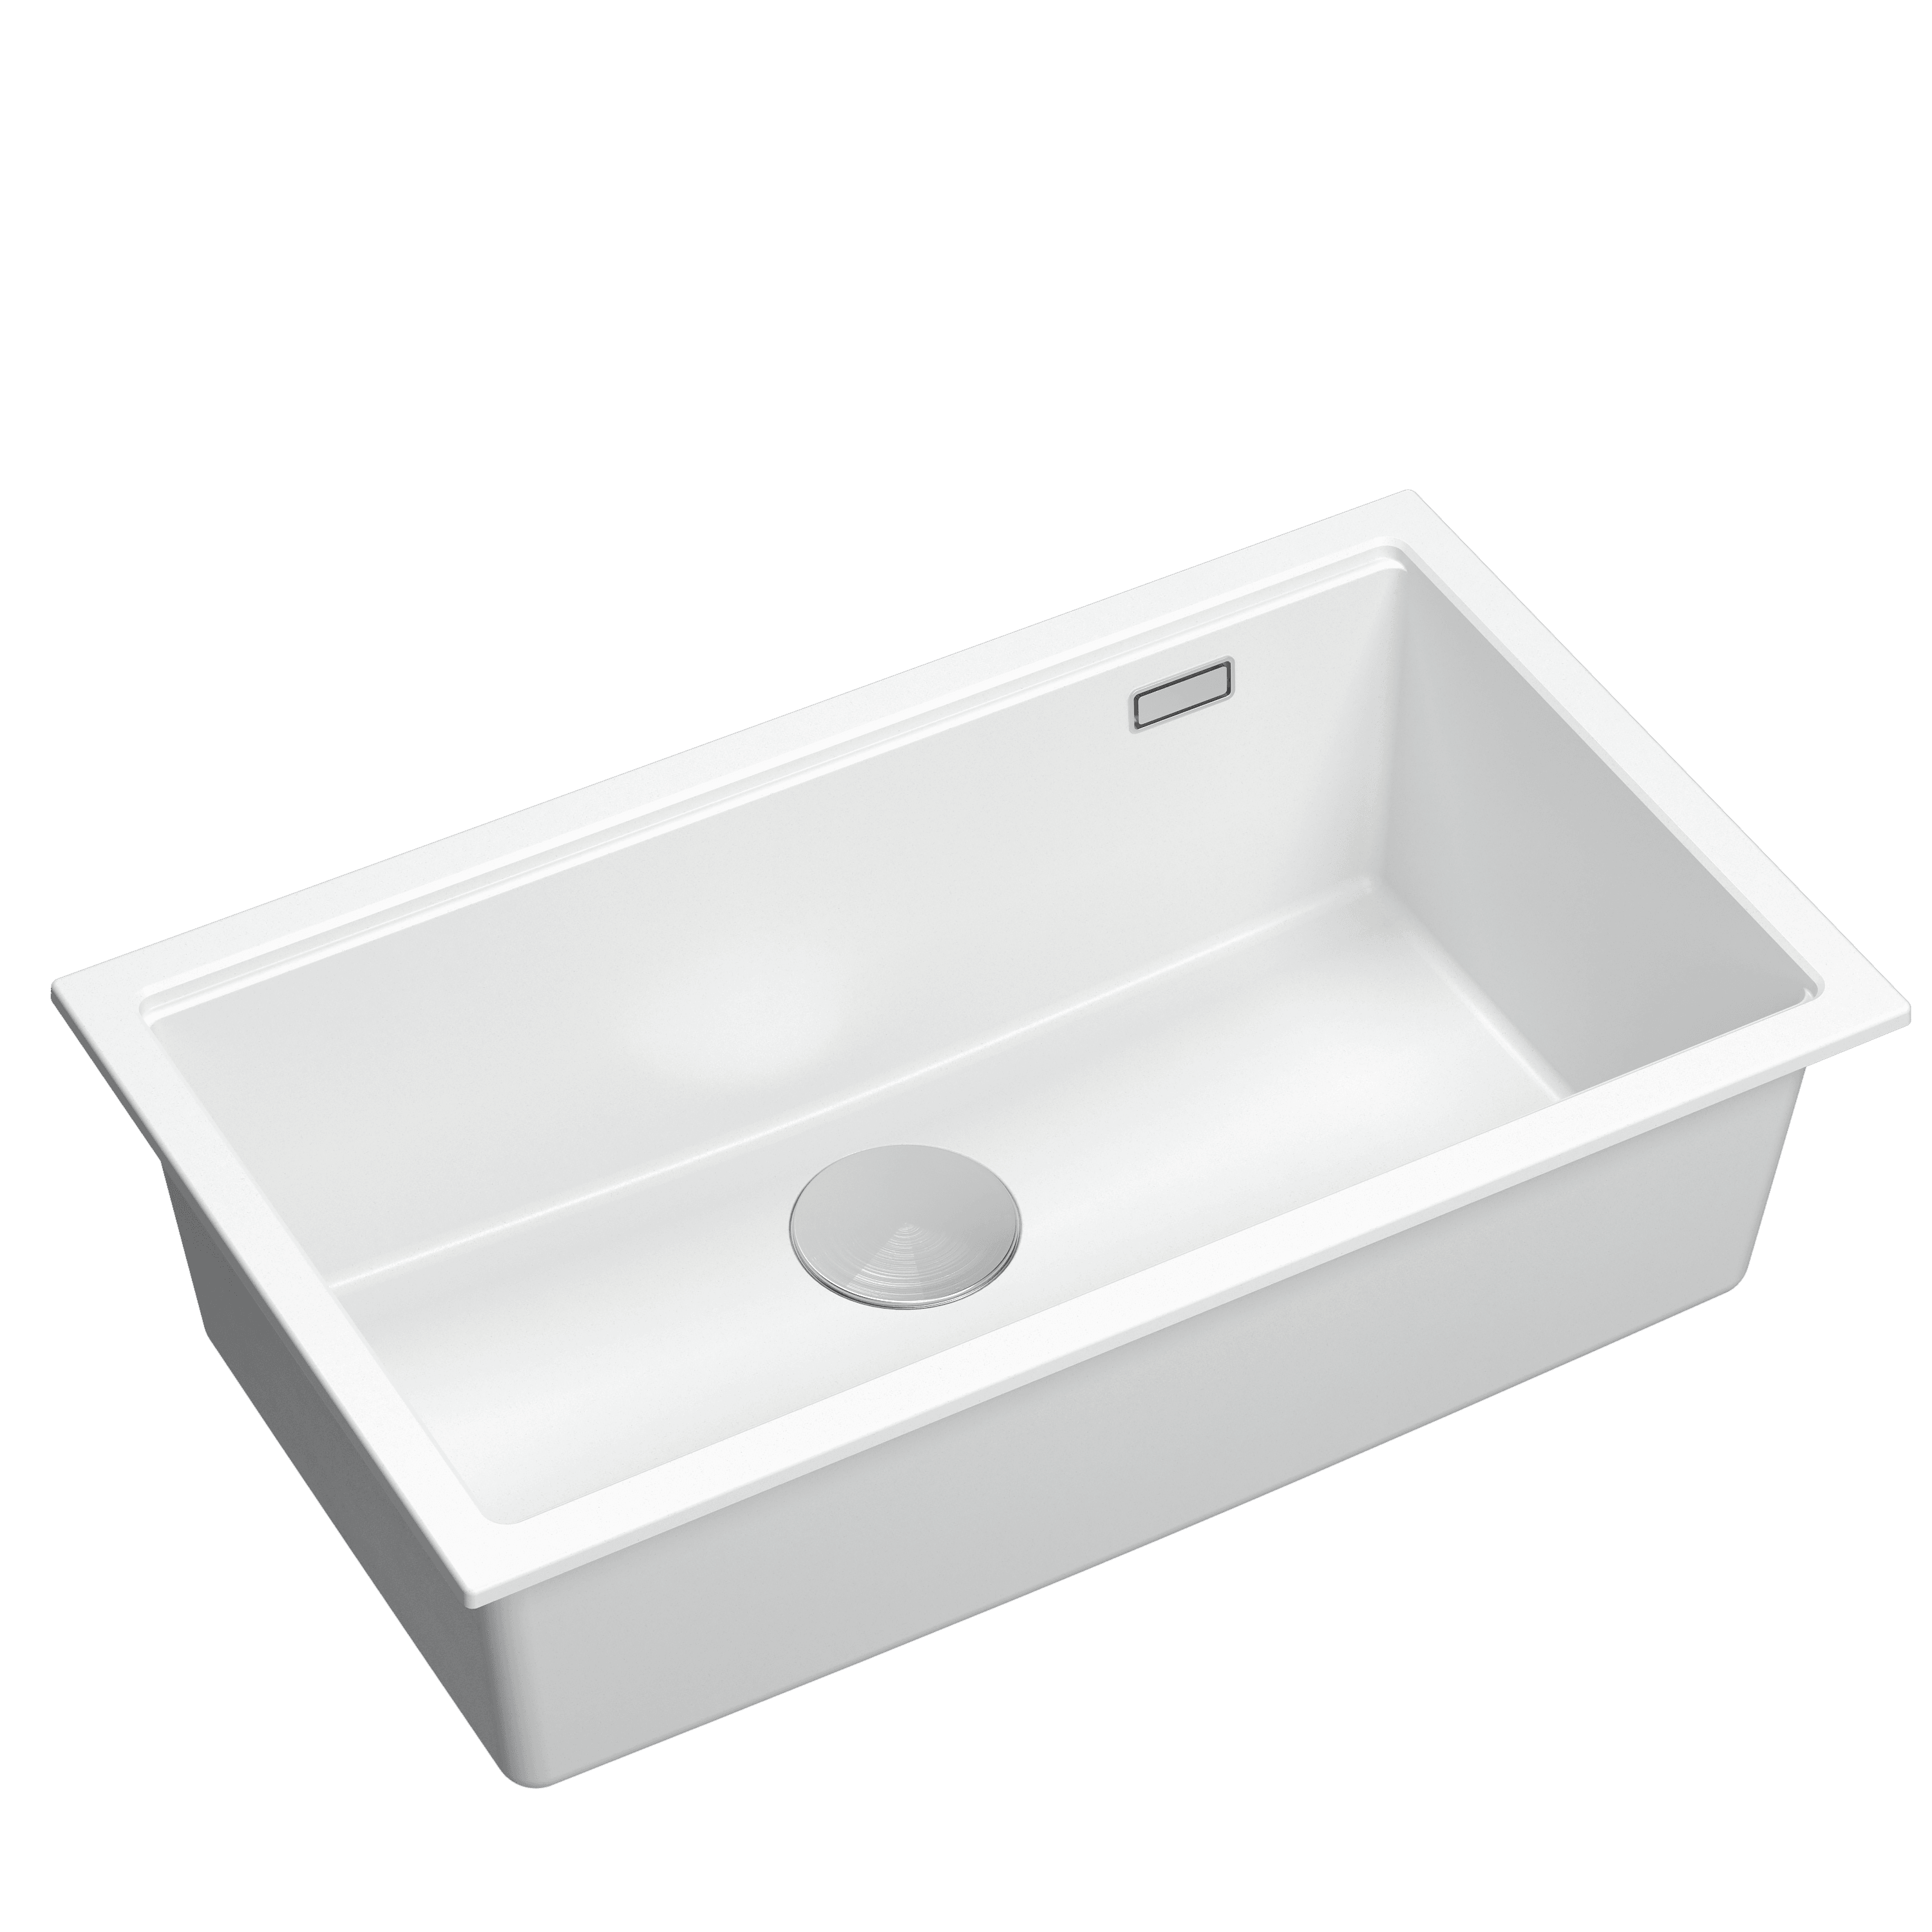 Quadron Logan 110 White, topmount or undermount sink - Olif